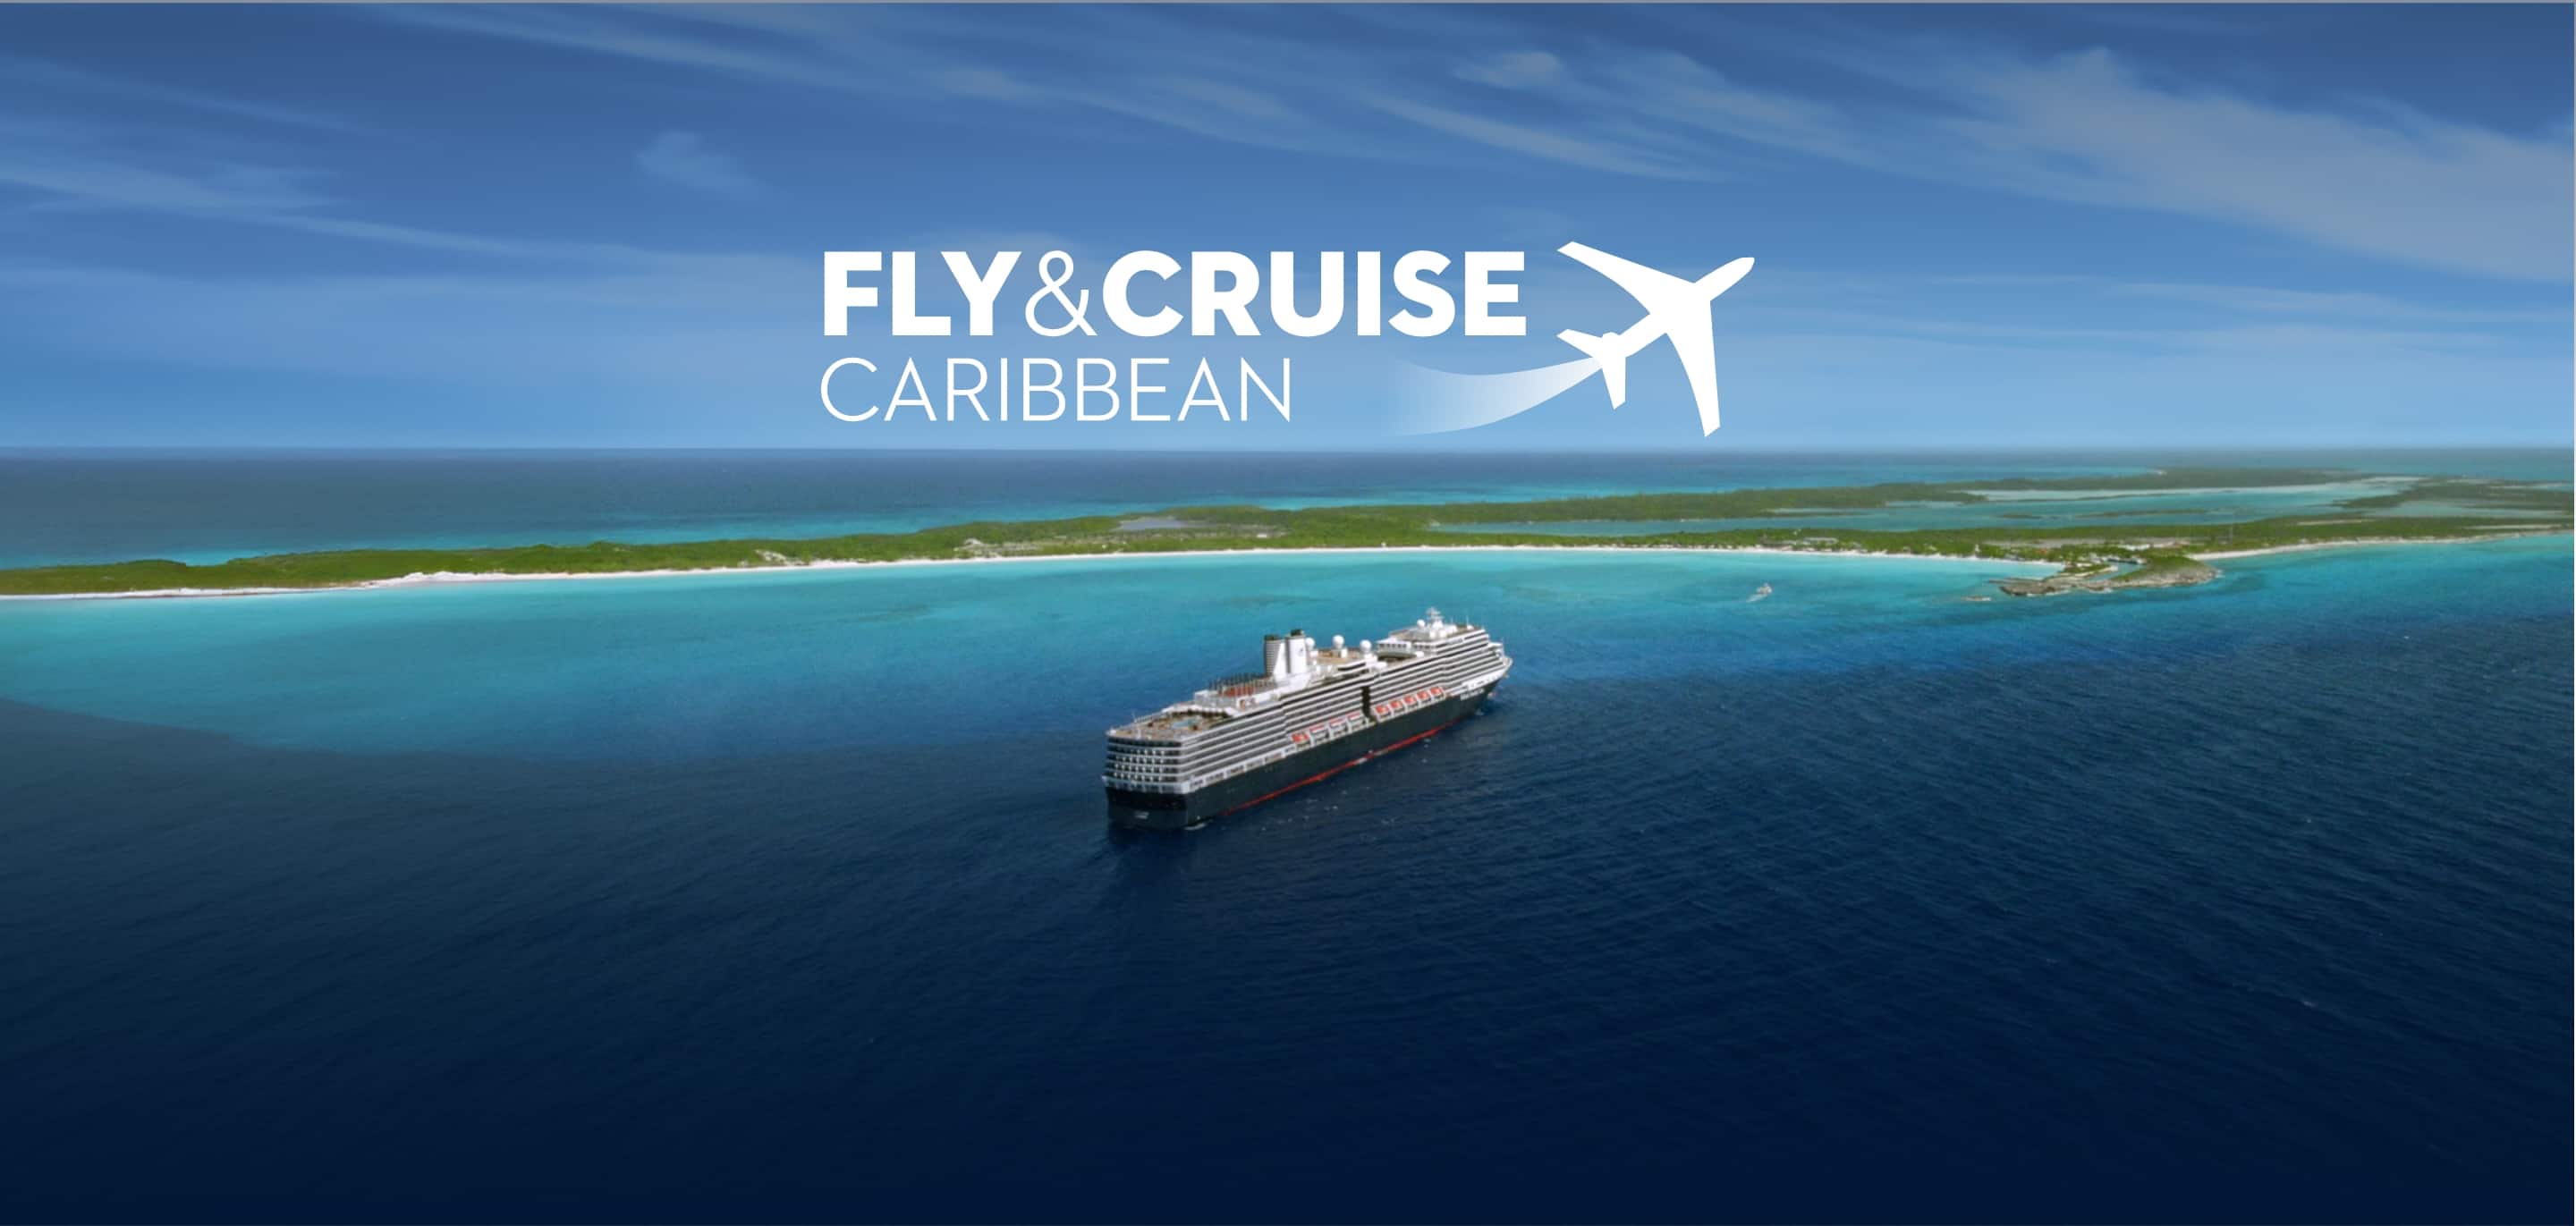 Fly&Cruise Caribbean